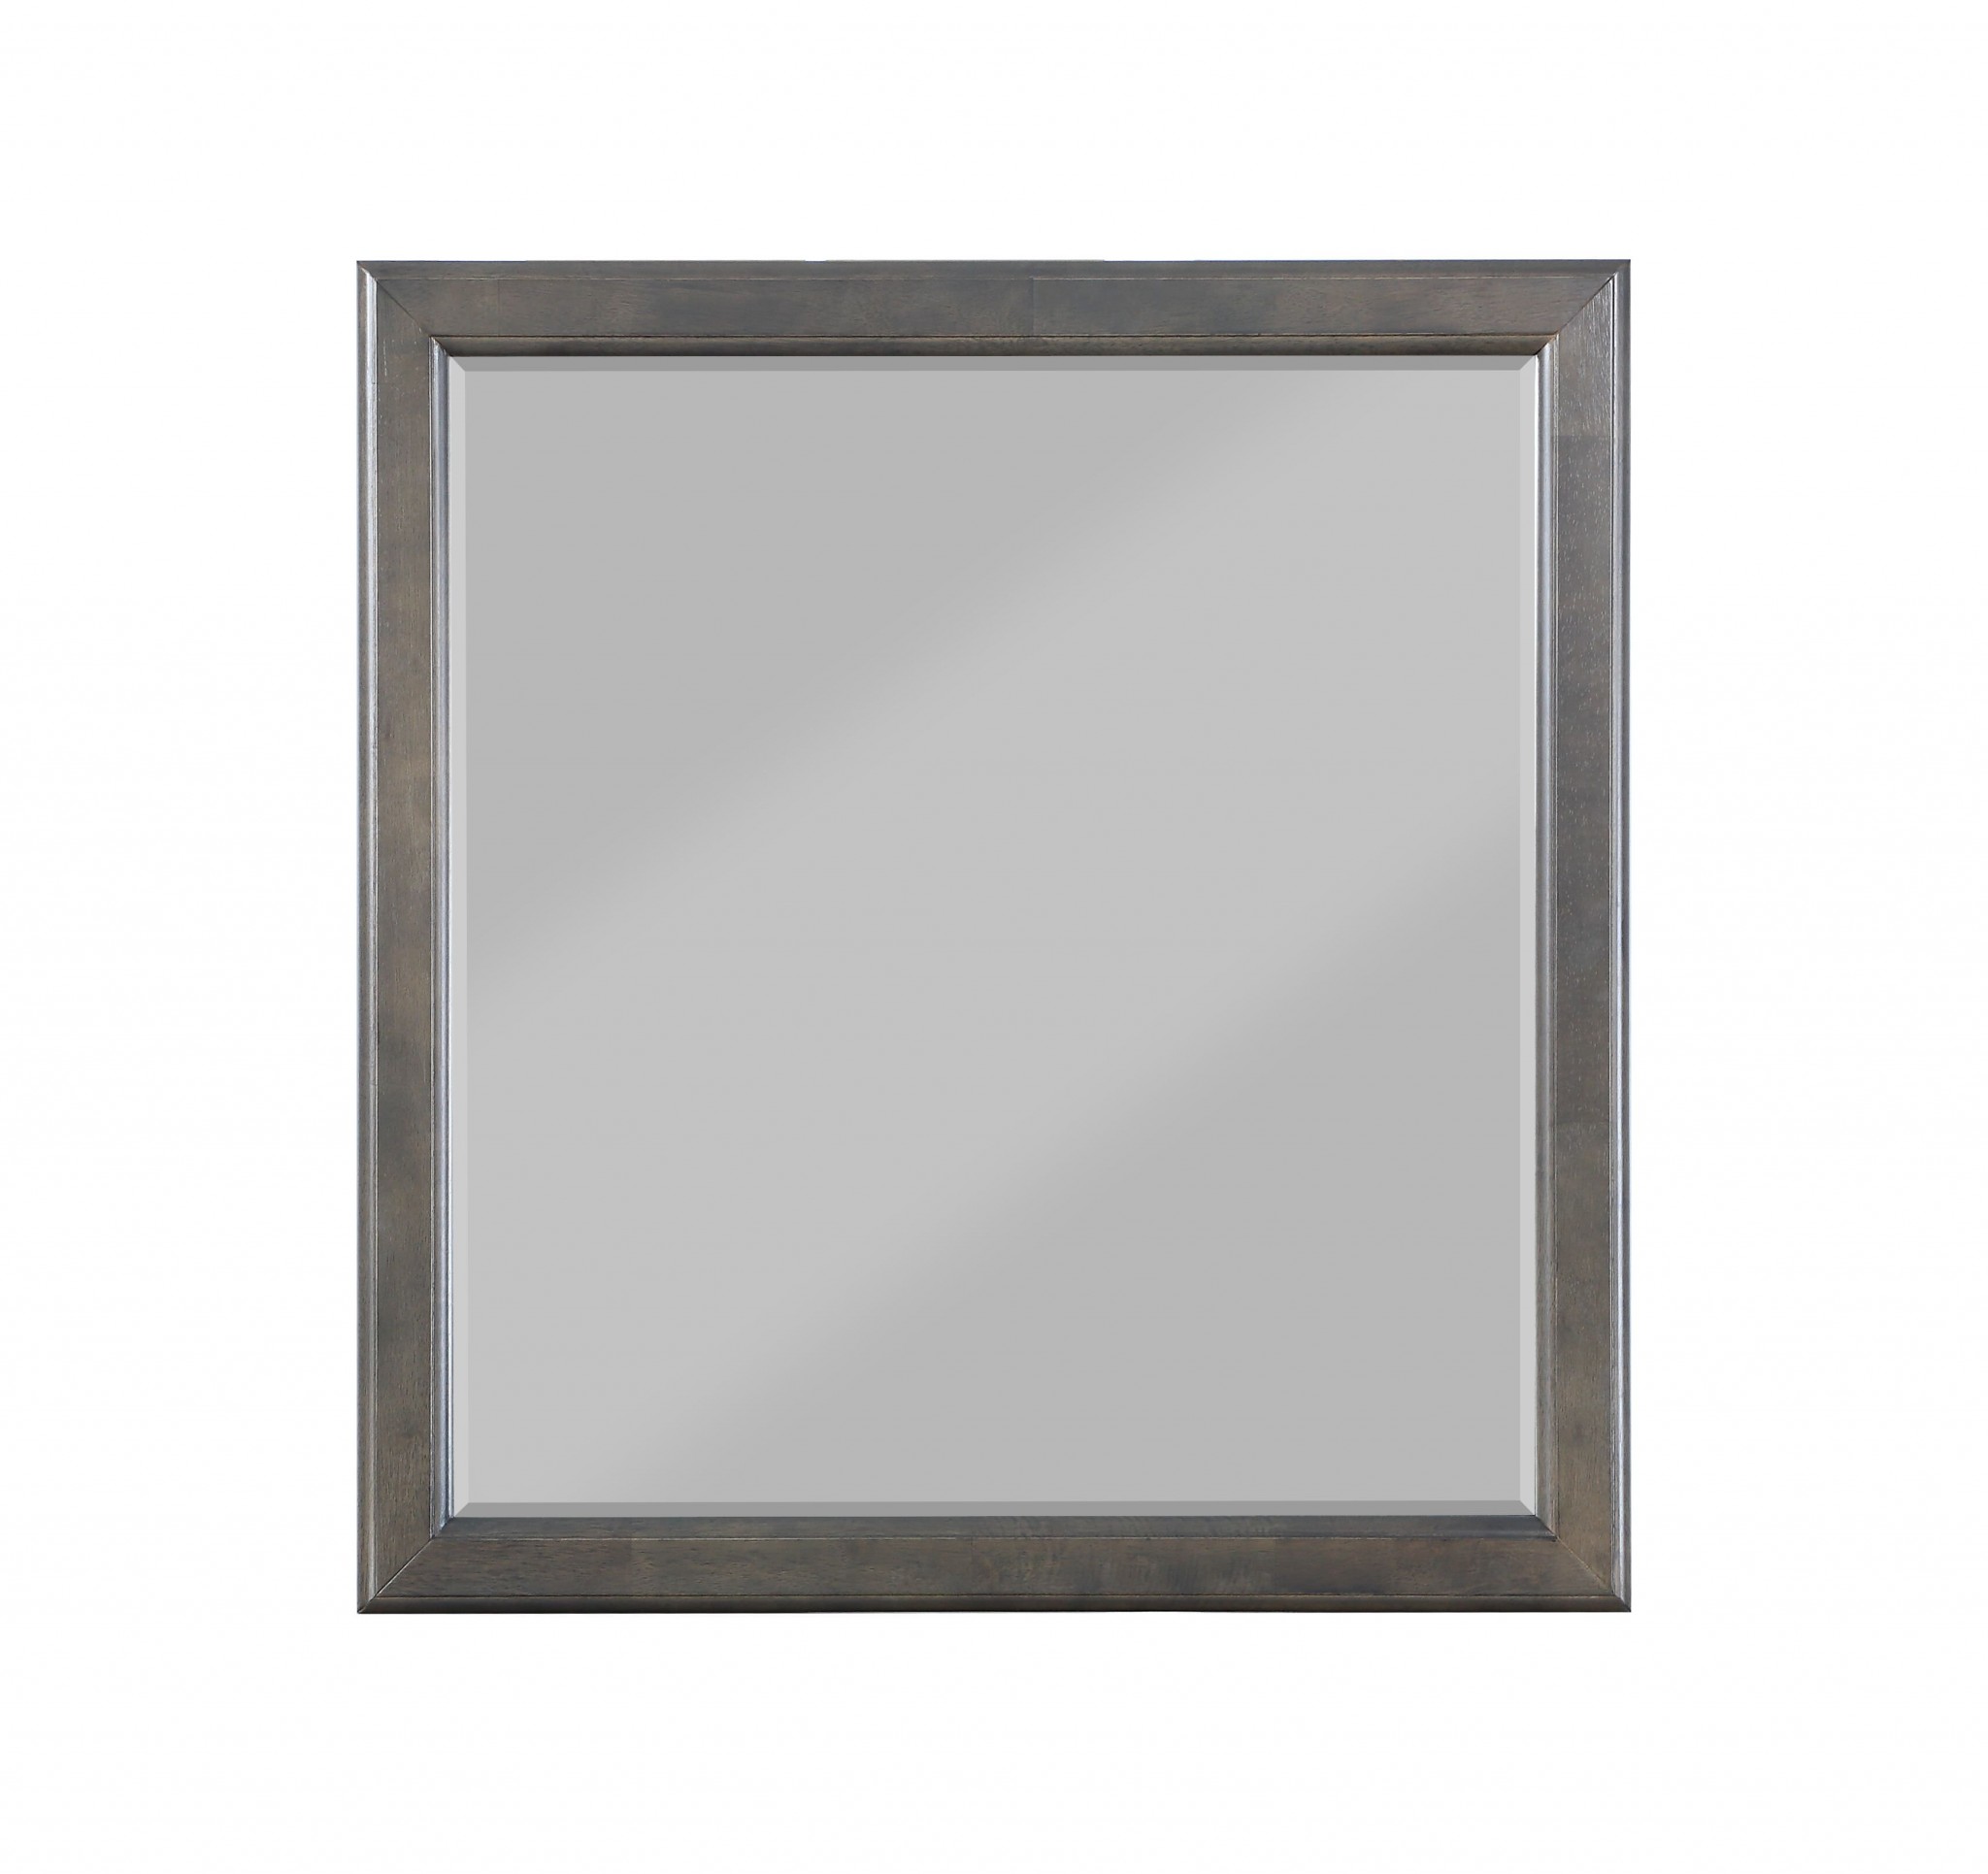 36" X 1" X 38" Dark Gray Wood Mirror